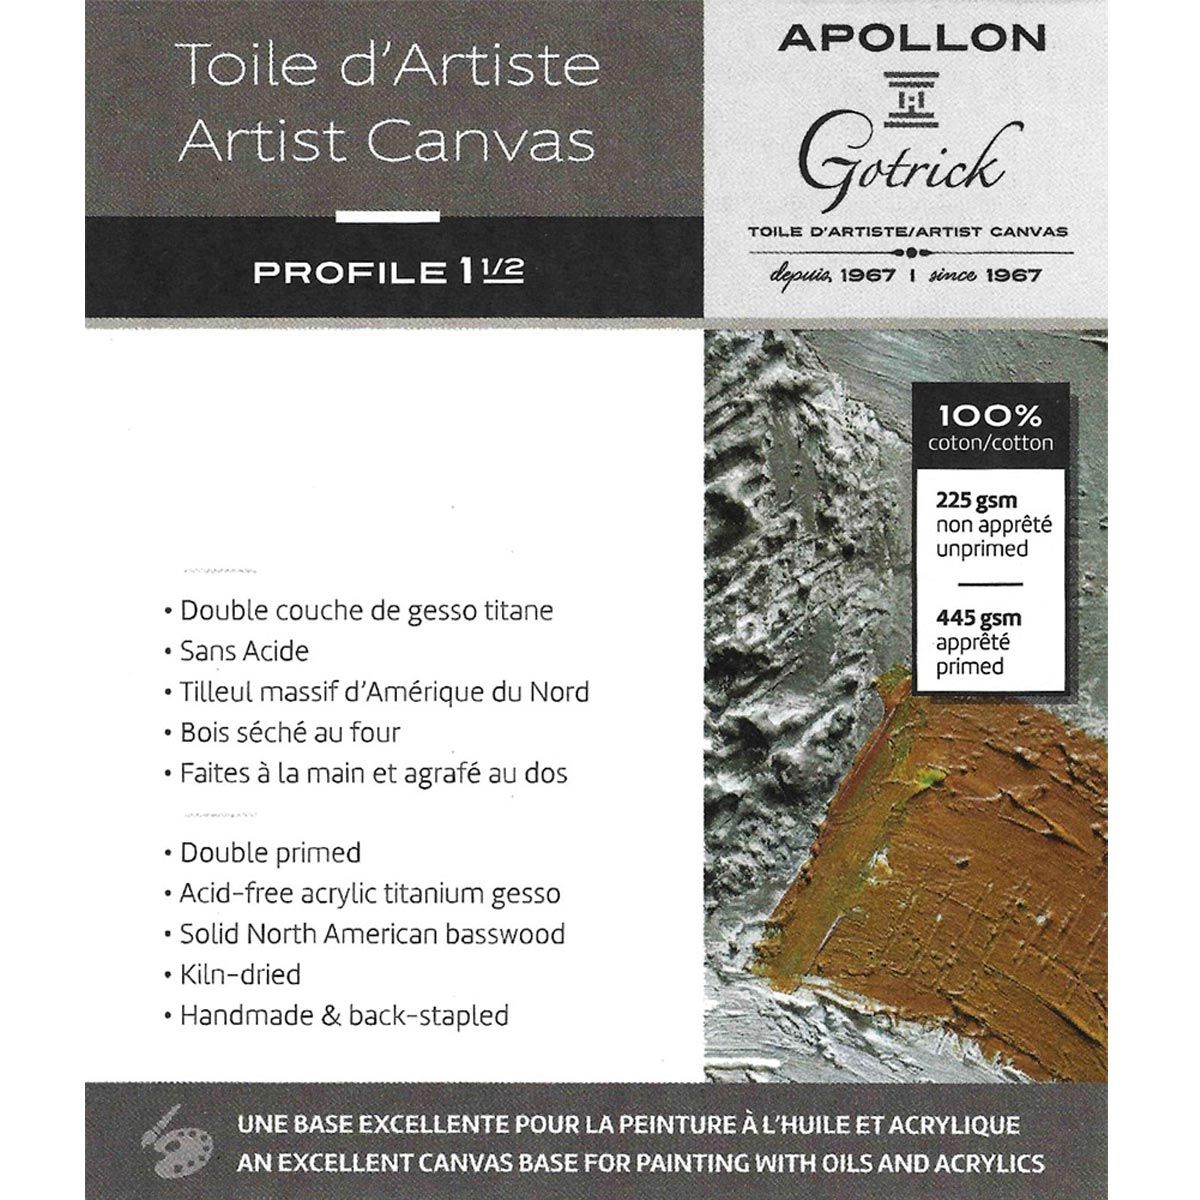 Apollon Gotrick Gallery Artist Canvas Profile 1½" - 8" x 8"